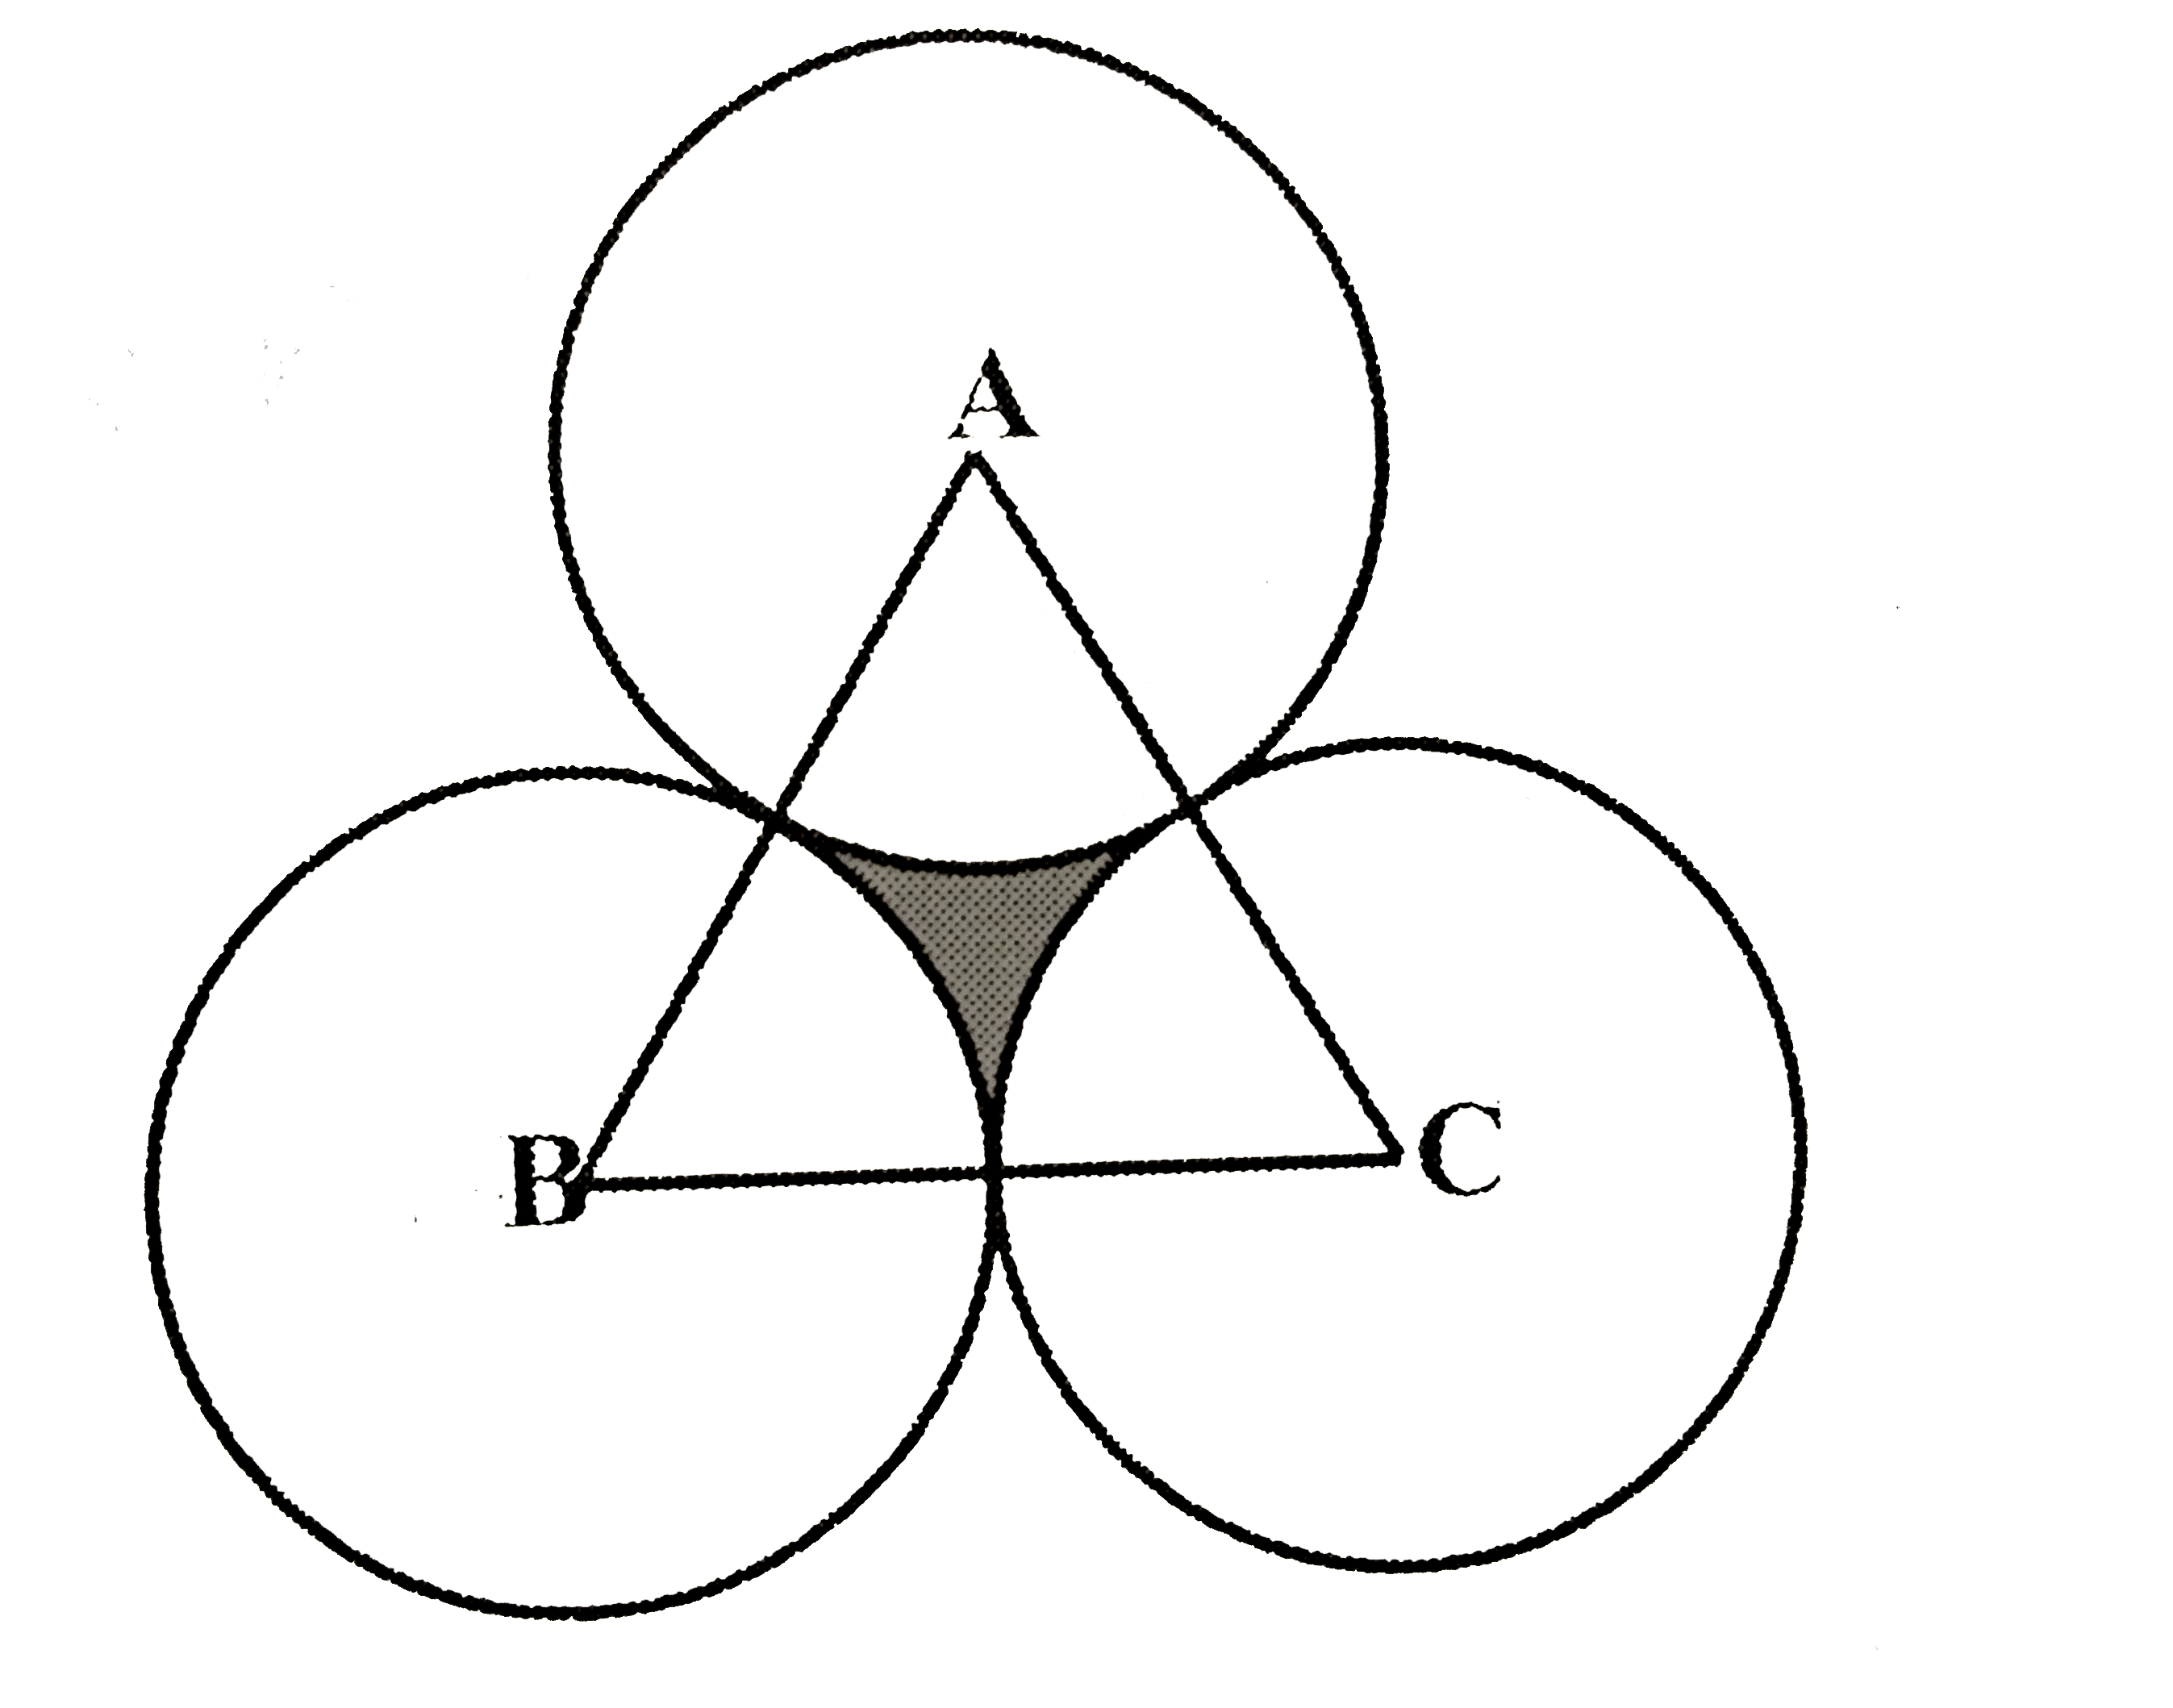 एक समबाहु त्रिभुज ABC का क्षेत्रफल 17320.5cm^(2) है। इस त्रिभुज के प्रत्येक शीर्ष को केंद्र मानकर त्रिभुज की भुजा के आधे के बराबर की त्रिज्या लेकर एक वृत्त खींचा जाता है। छायांकित भाग का क्षेत्रफल ज्ञात कीजिए। (pi=3.14 और sqrt(3)=1.73205 लीजिए।)